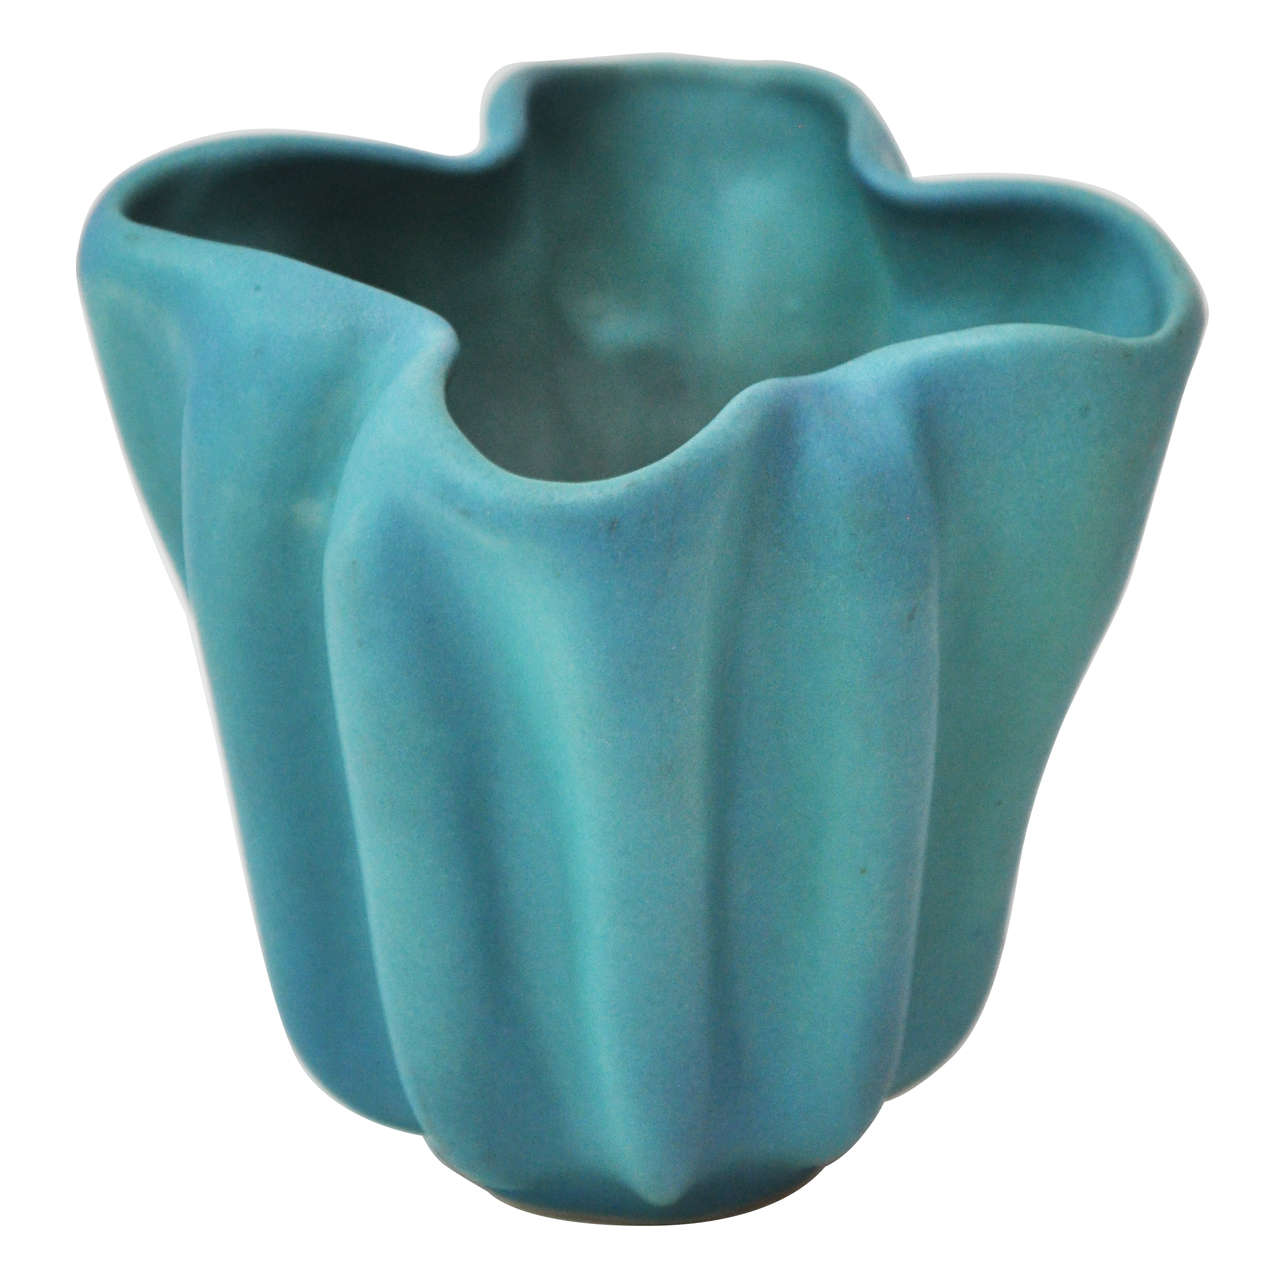 Authentic Van Briggle Pottery Vase